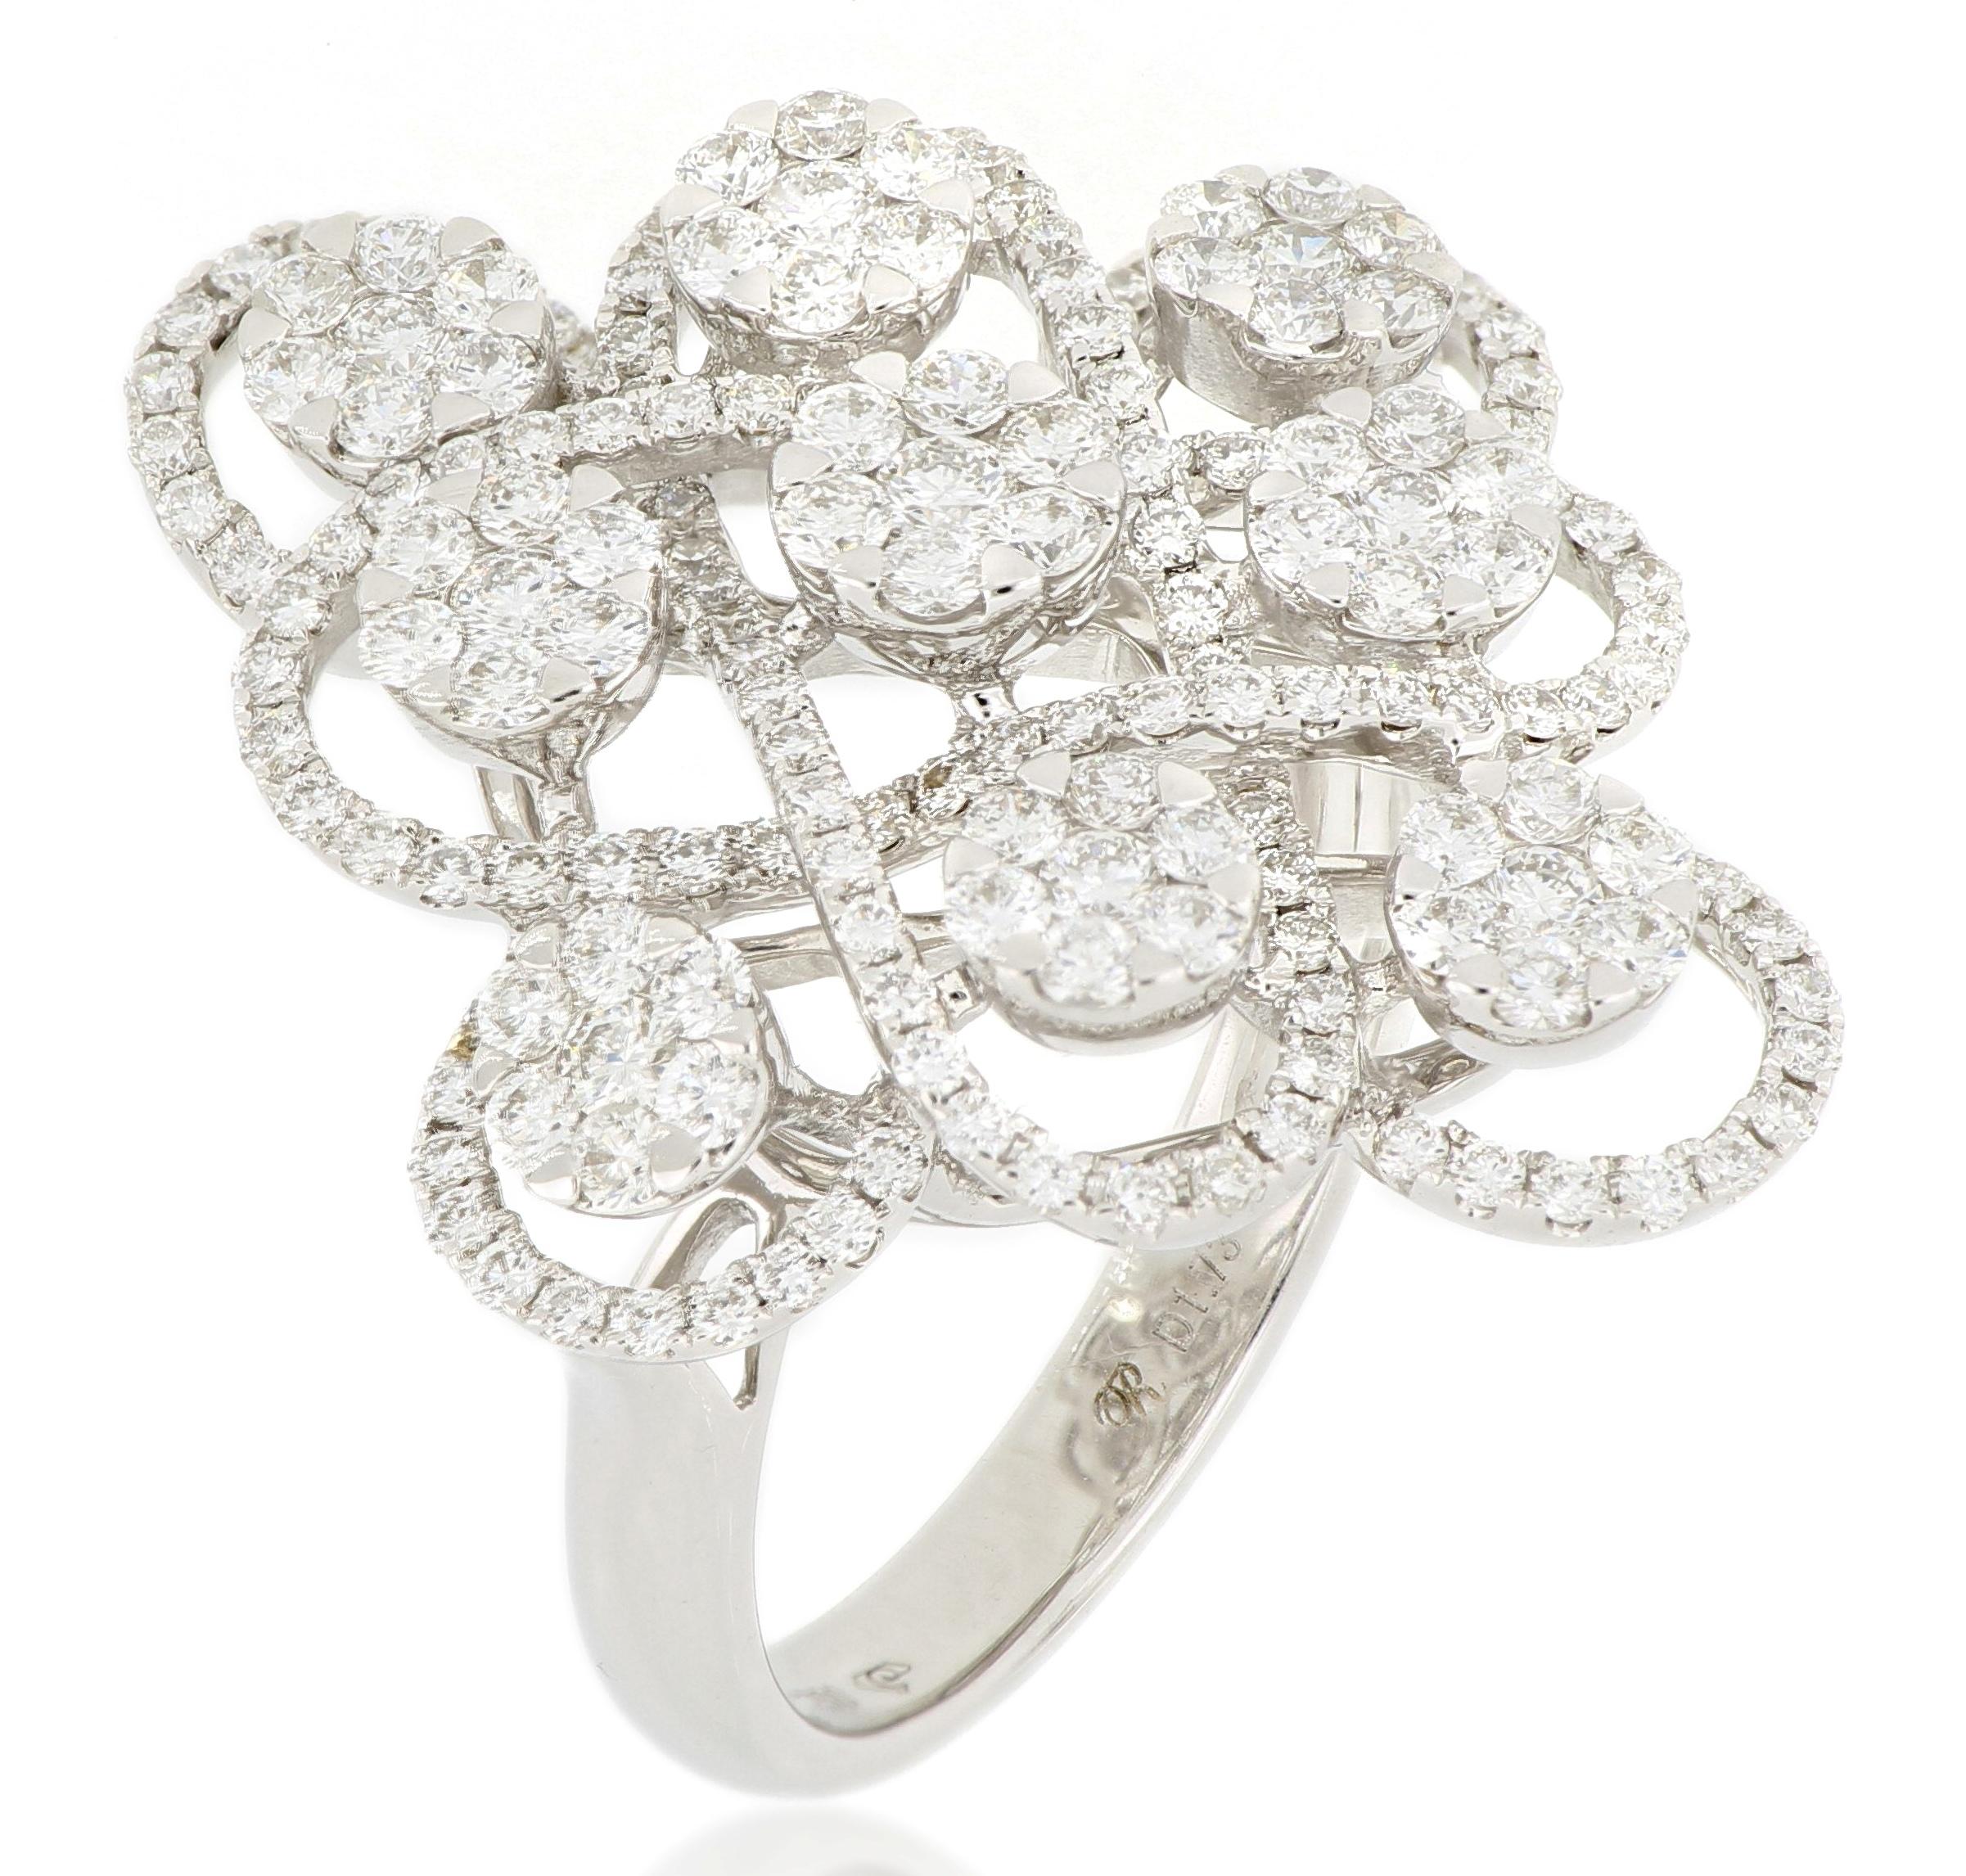 Ein schön gestalteter, symmetrischer Diamantring mit Brillanten von insgesamt 1,73 Karat, gefasst in 18 Karat Weißgold.
Ein schöner Ring, der zu jeder Gelegenheit getragen werden kann.
Die Marke ist bekannt für ihre hochwertigen Schmuckkollektionen